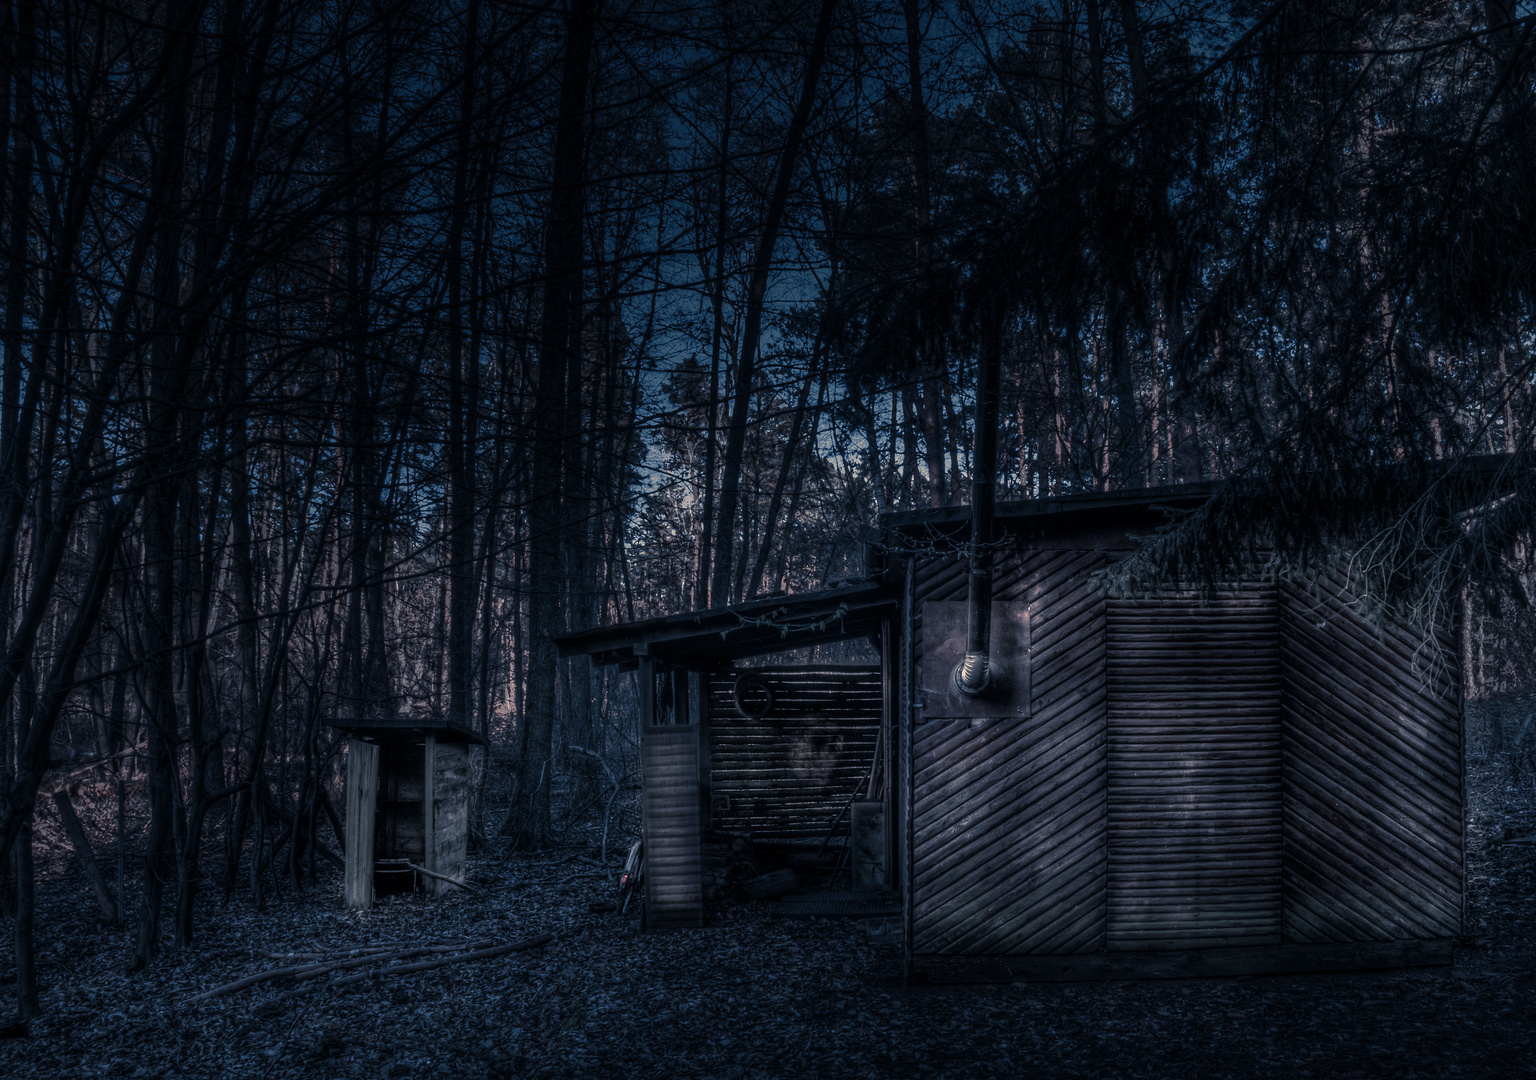 Die einsame, verlassene Hütte im Wald